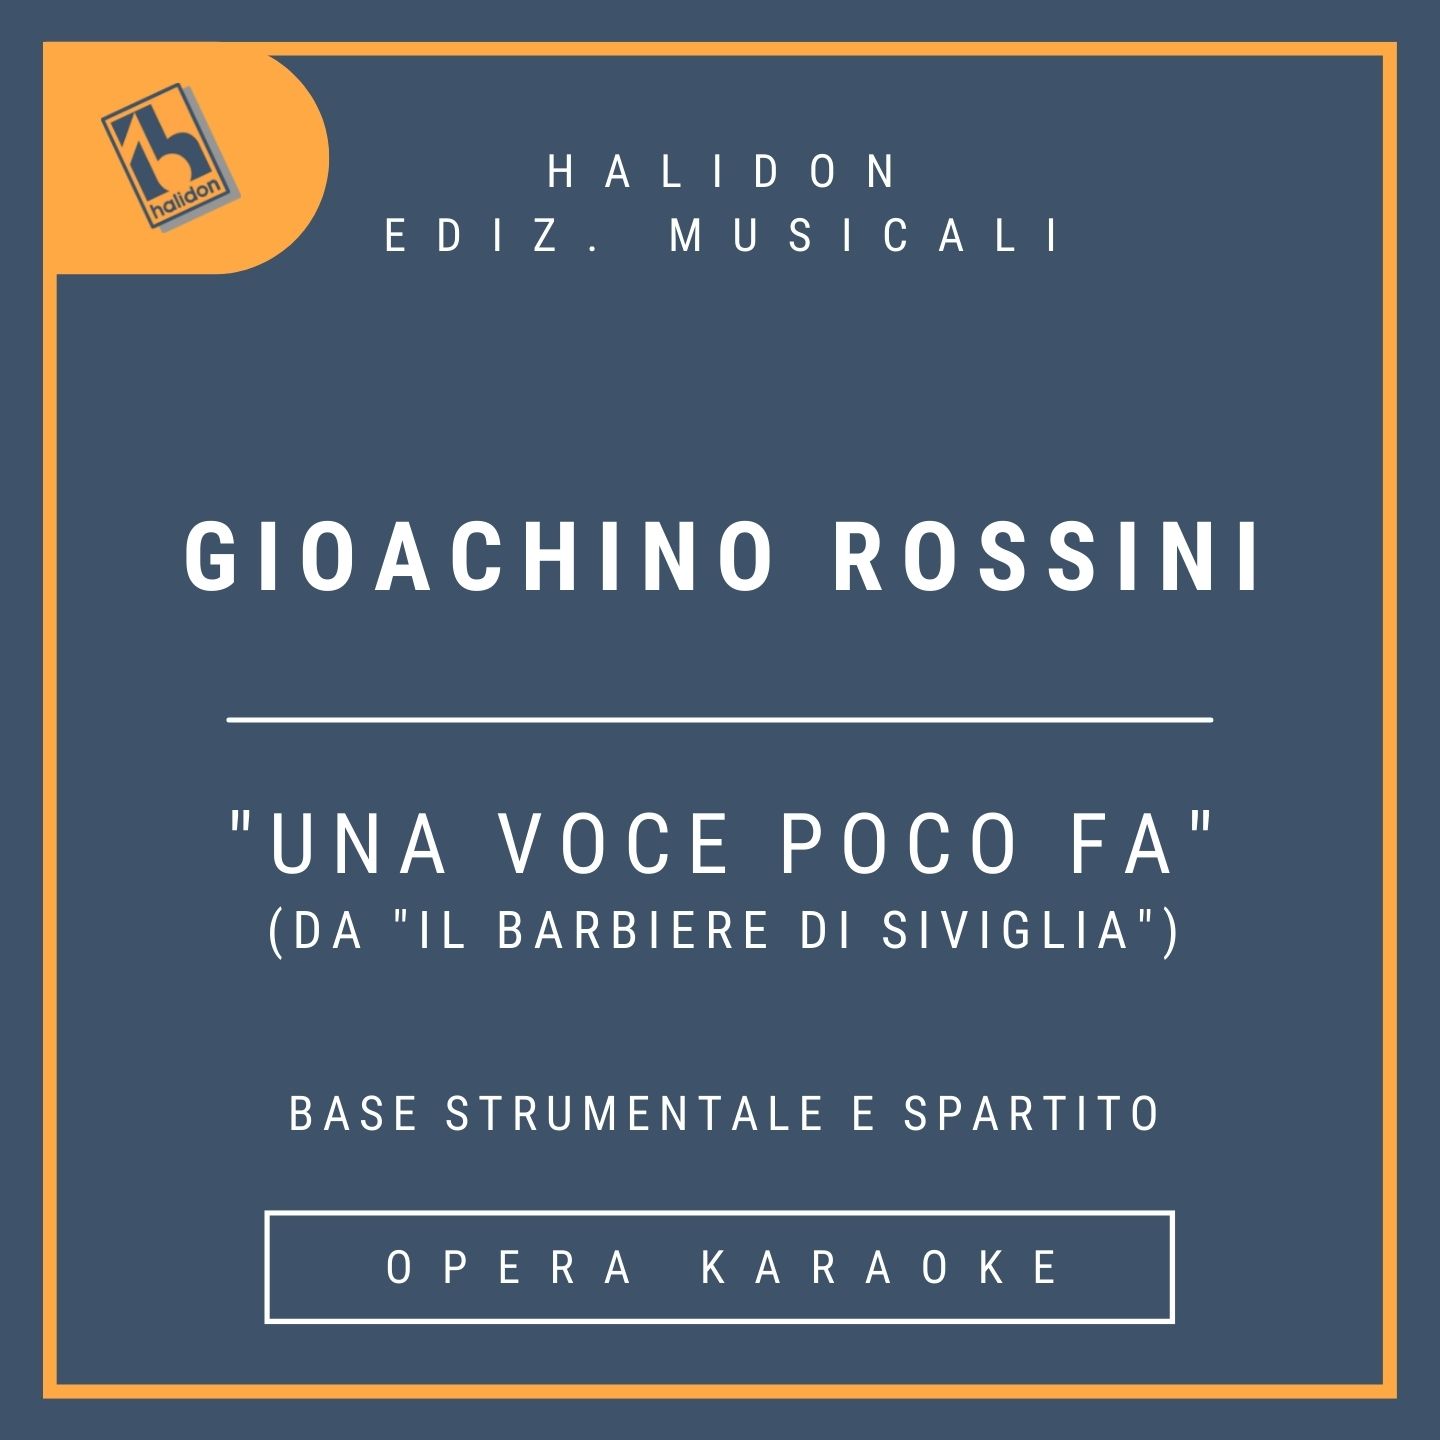 Gioachino Rossini - Una voce poco fa (da 'Il barbiere di Siviglia') - Cavatina di Rosina (soprano-mezzosoprano) - Base strumentale + spartito